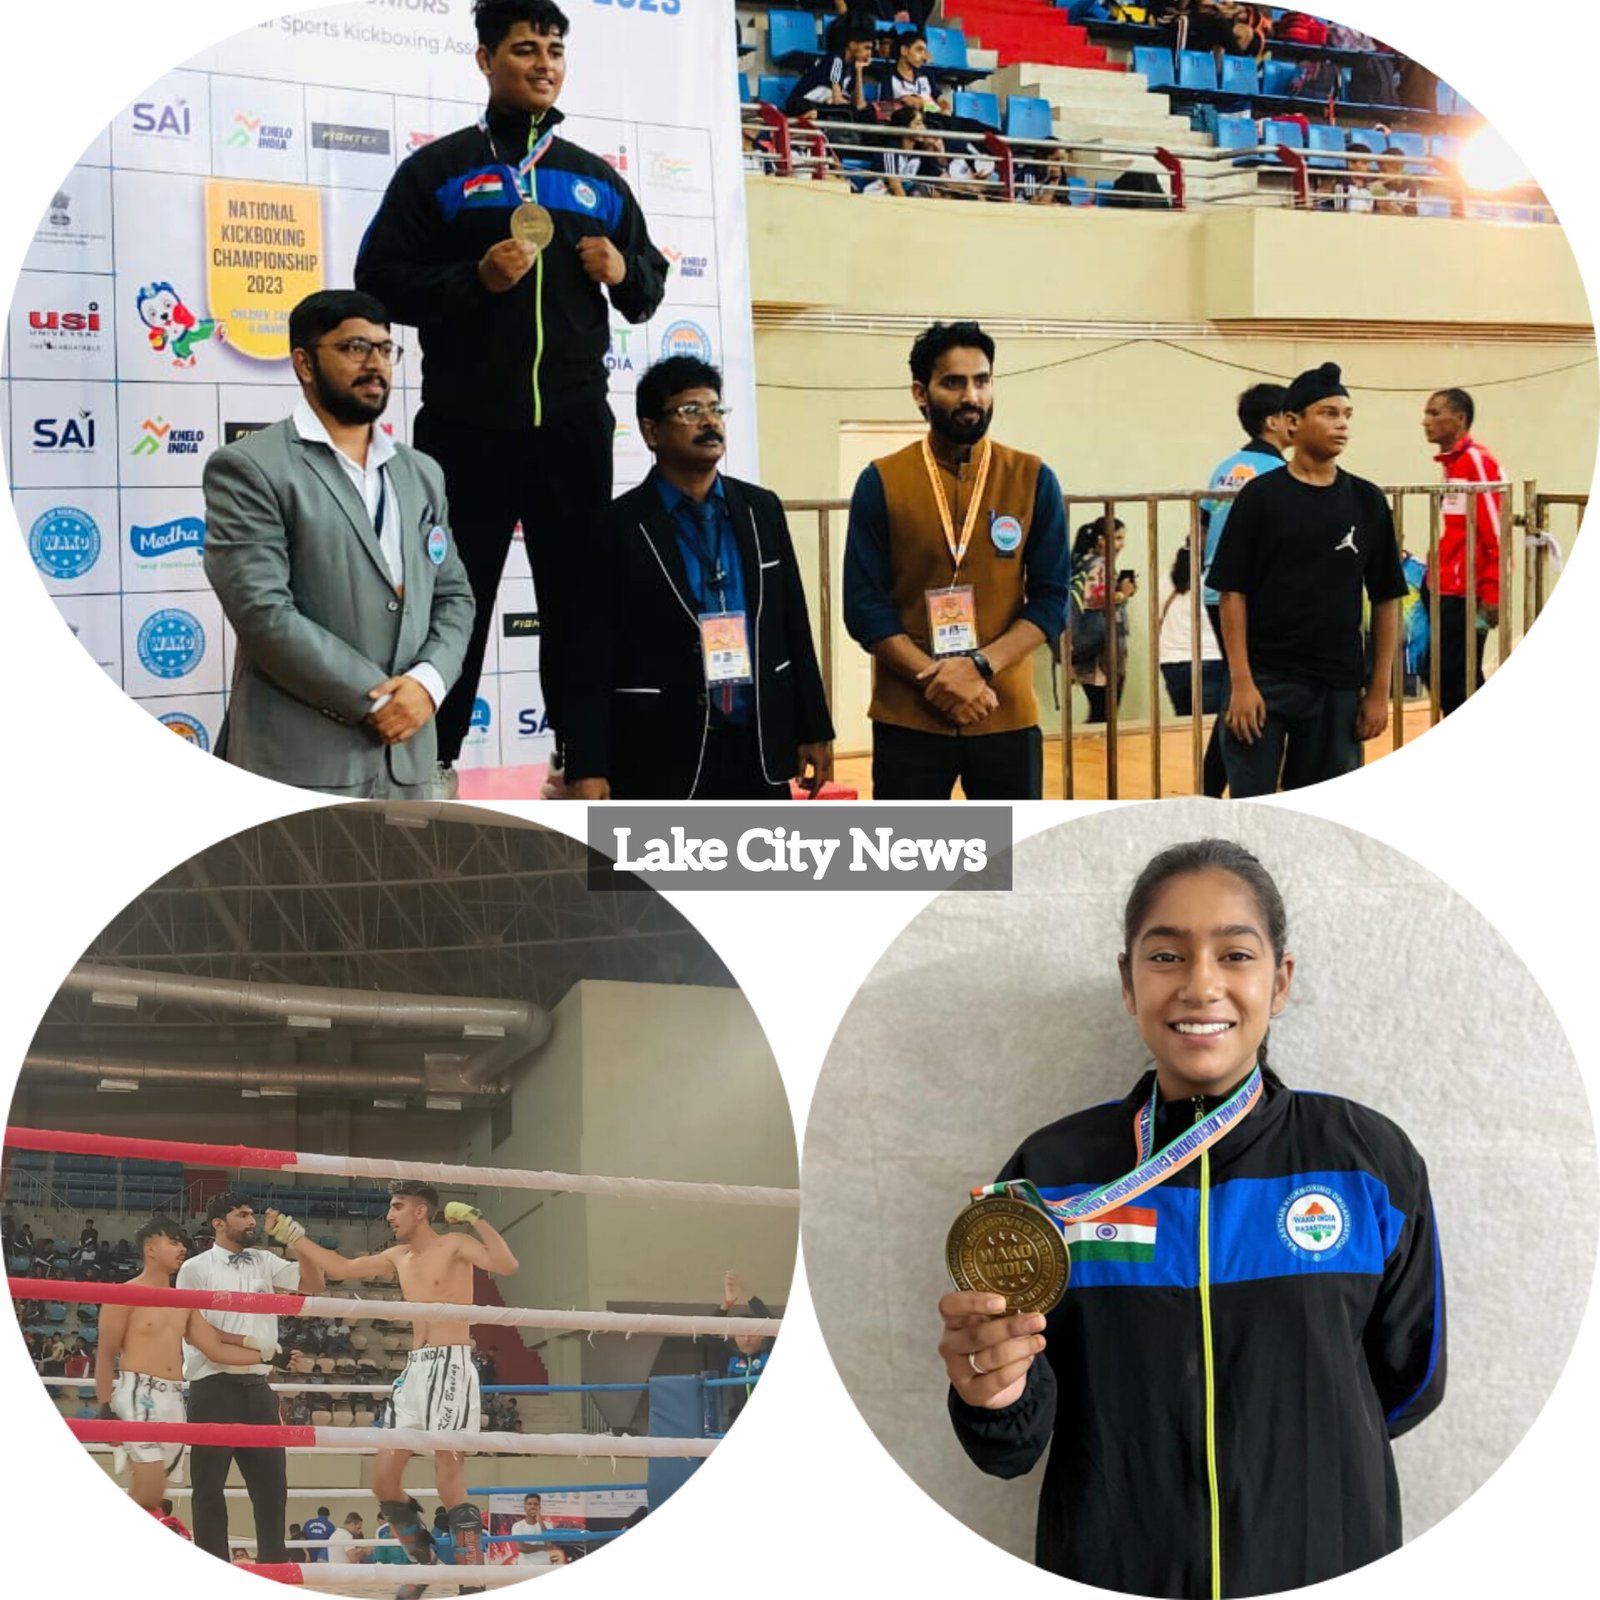 राष्ट्रीय किक बॉक्सिंग चैंपियनशिप में उदयपुर के खिलाड़ियों ने जीते तीन स्वर्ण व चार कांस्य पदक